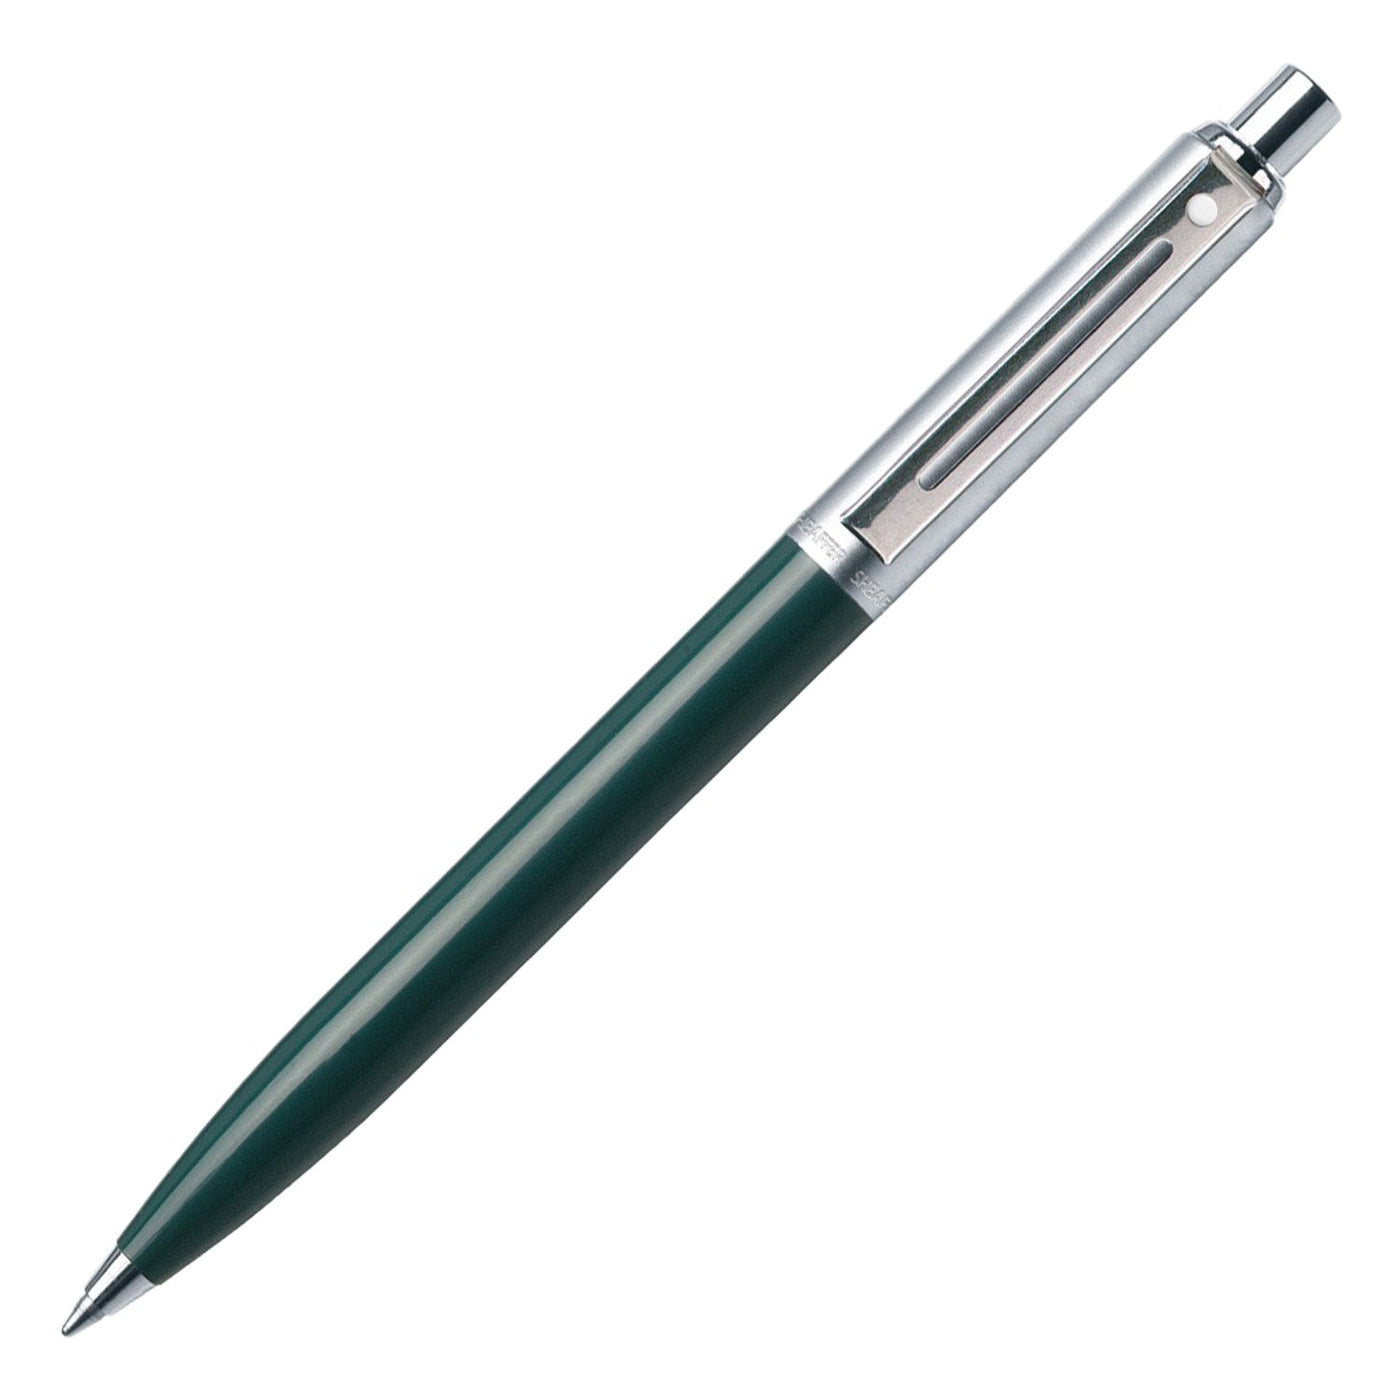 Sheaffer Sentinel Ball Pen - Green & Brushed Chrome 1